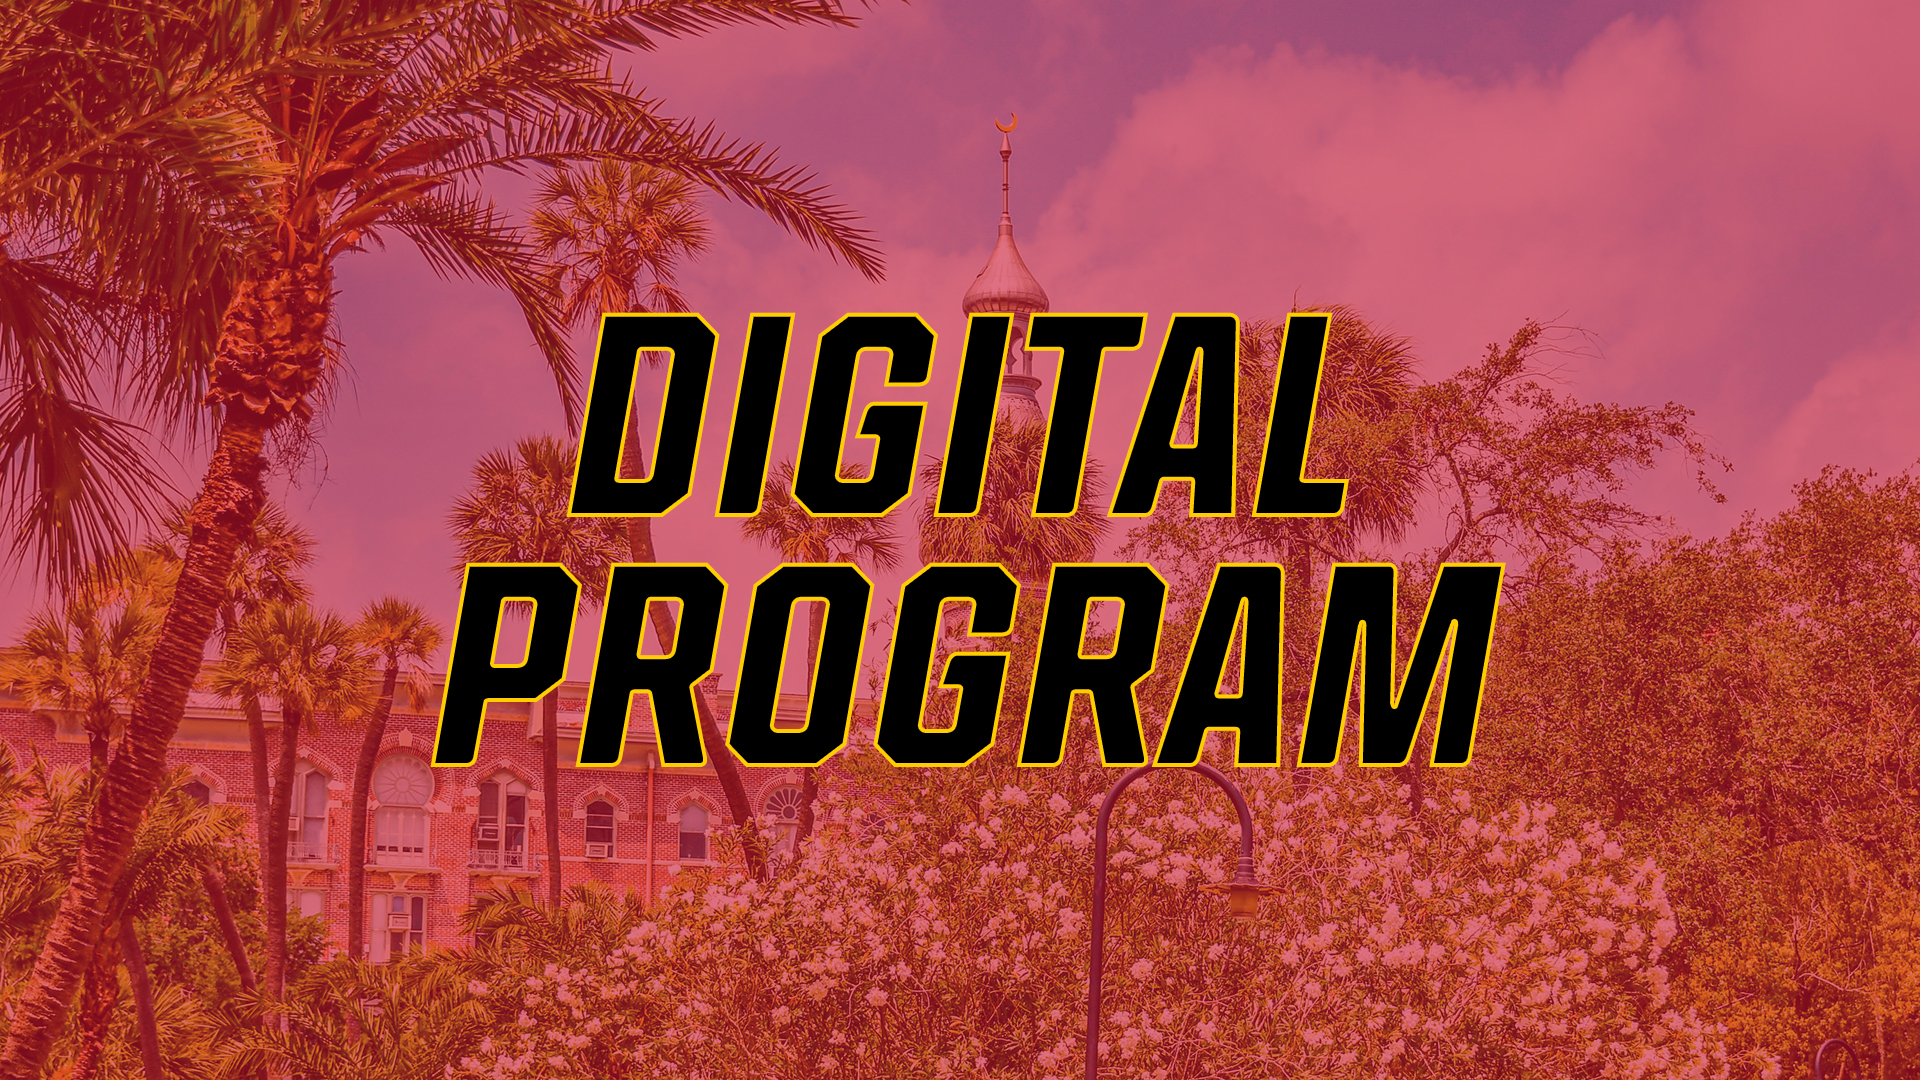 Digital Program